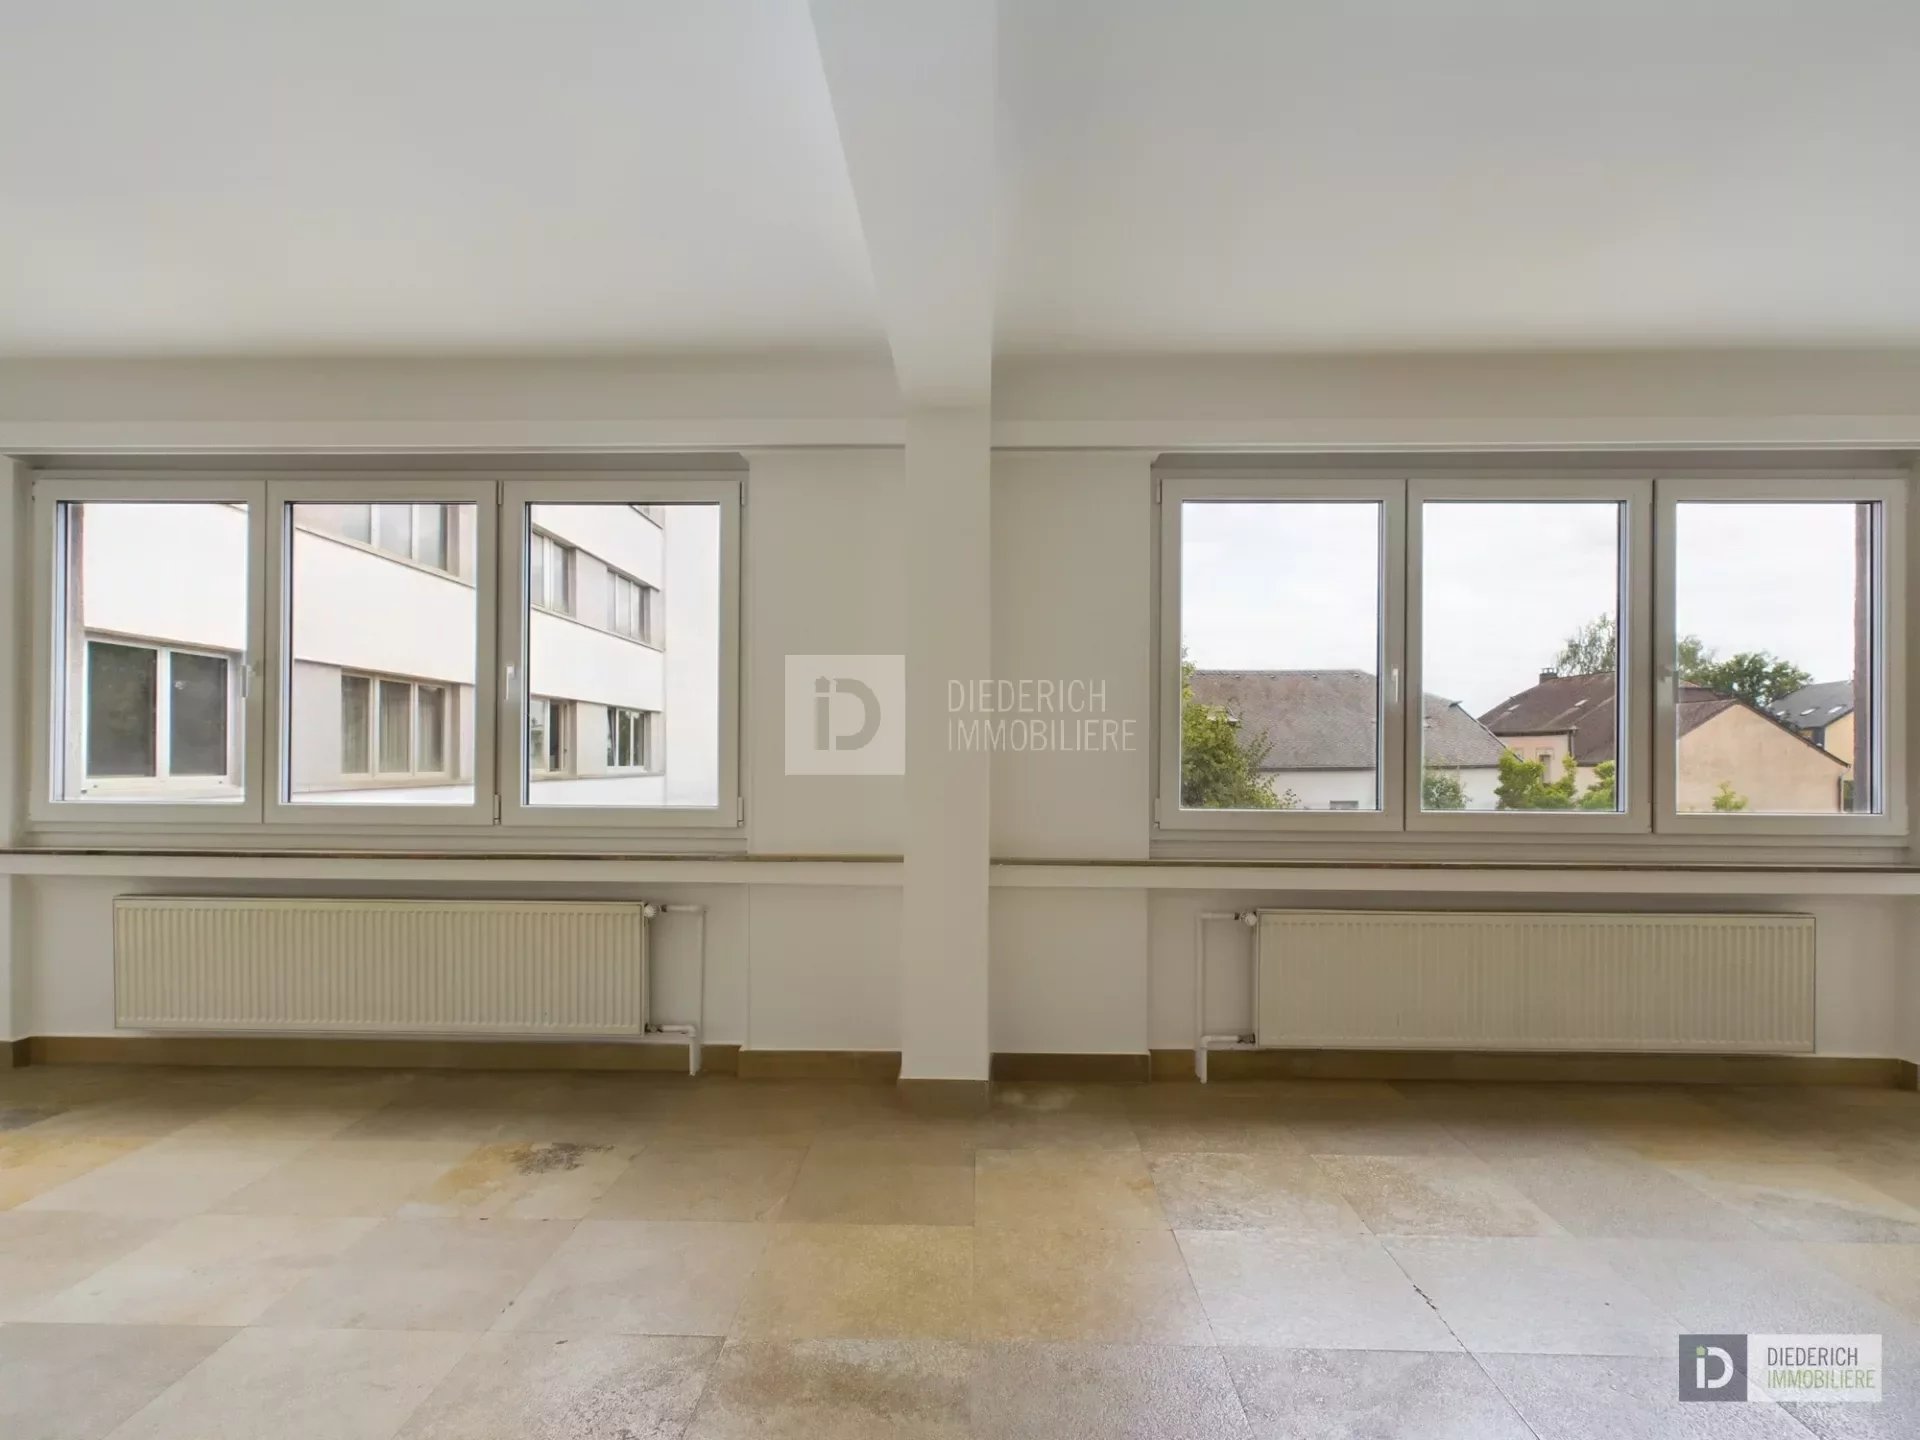 Sale Apartment - Hesperange - Luxembourg